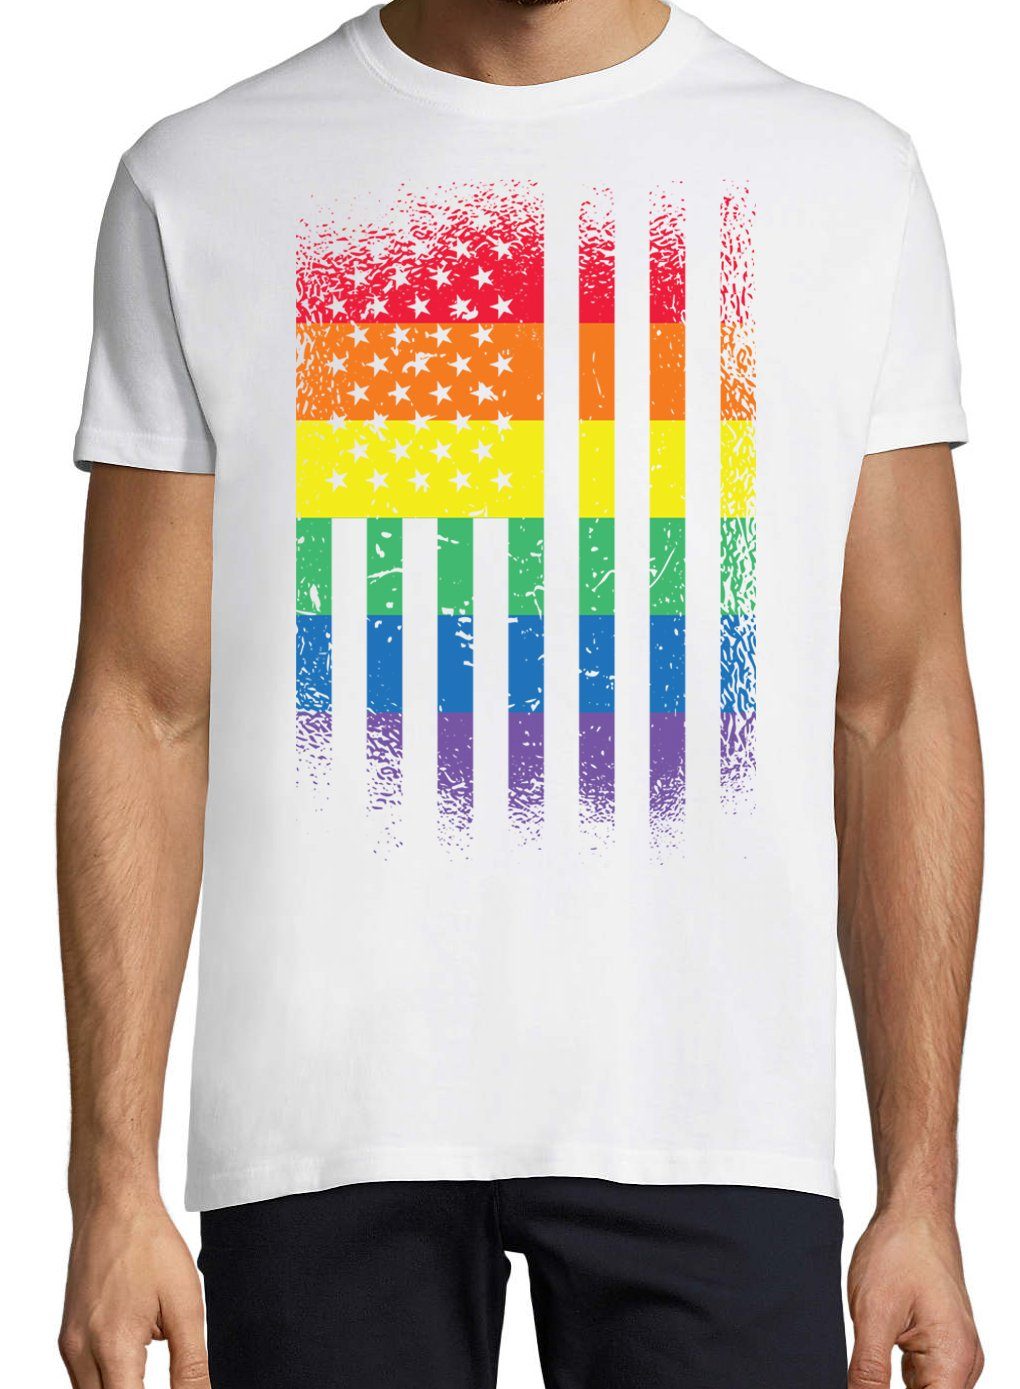 Frontdruck mit Designz Shirt Flagge Weiss T-Shirt Amerika Pride Youth Trendigem Herren